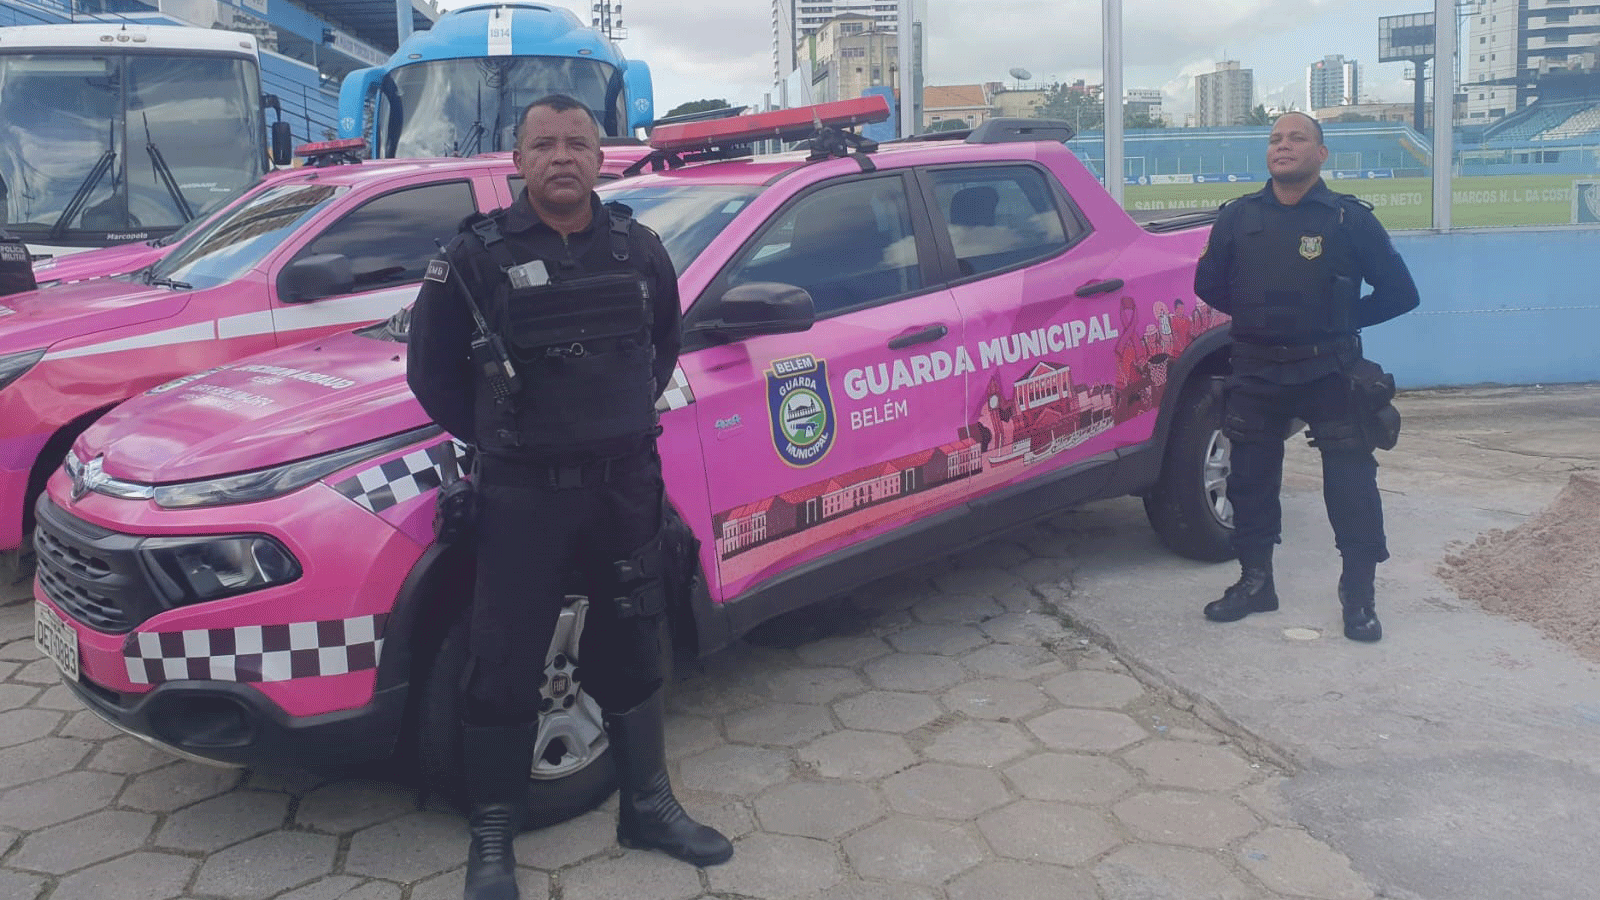 Agentes da Guarda Municipal de Belém também atuam na campanha  que combate condutas contra a liberdade das mulheres e do público LGBTQI+ em jogos de futebol.